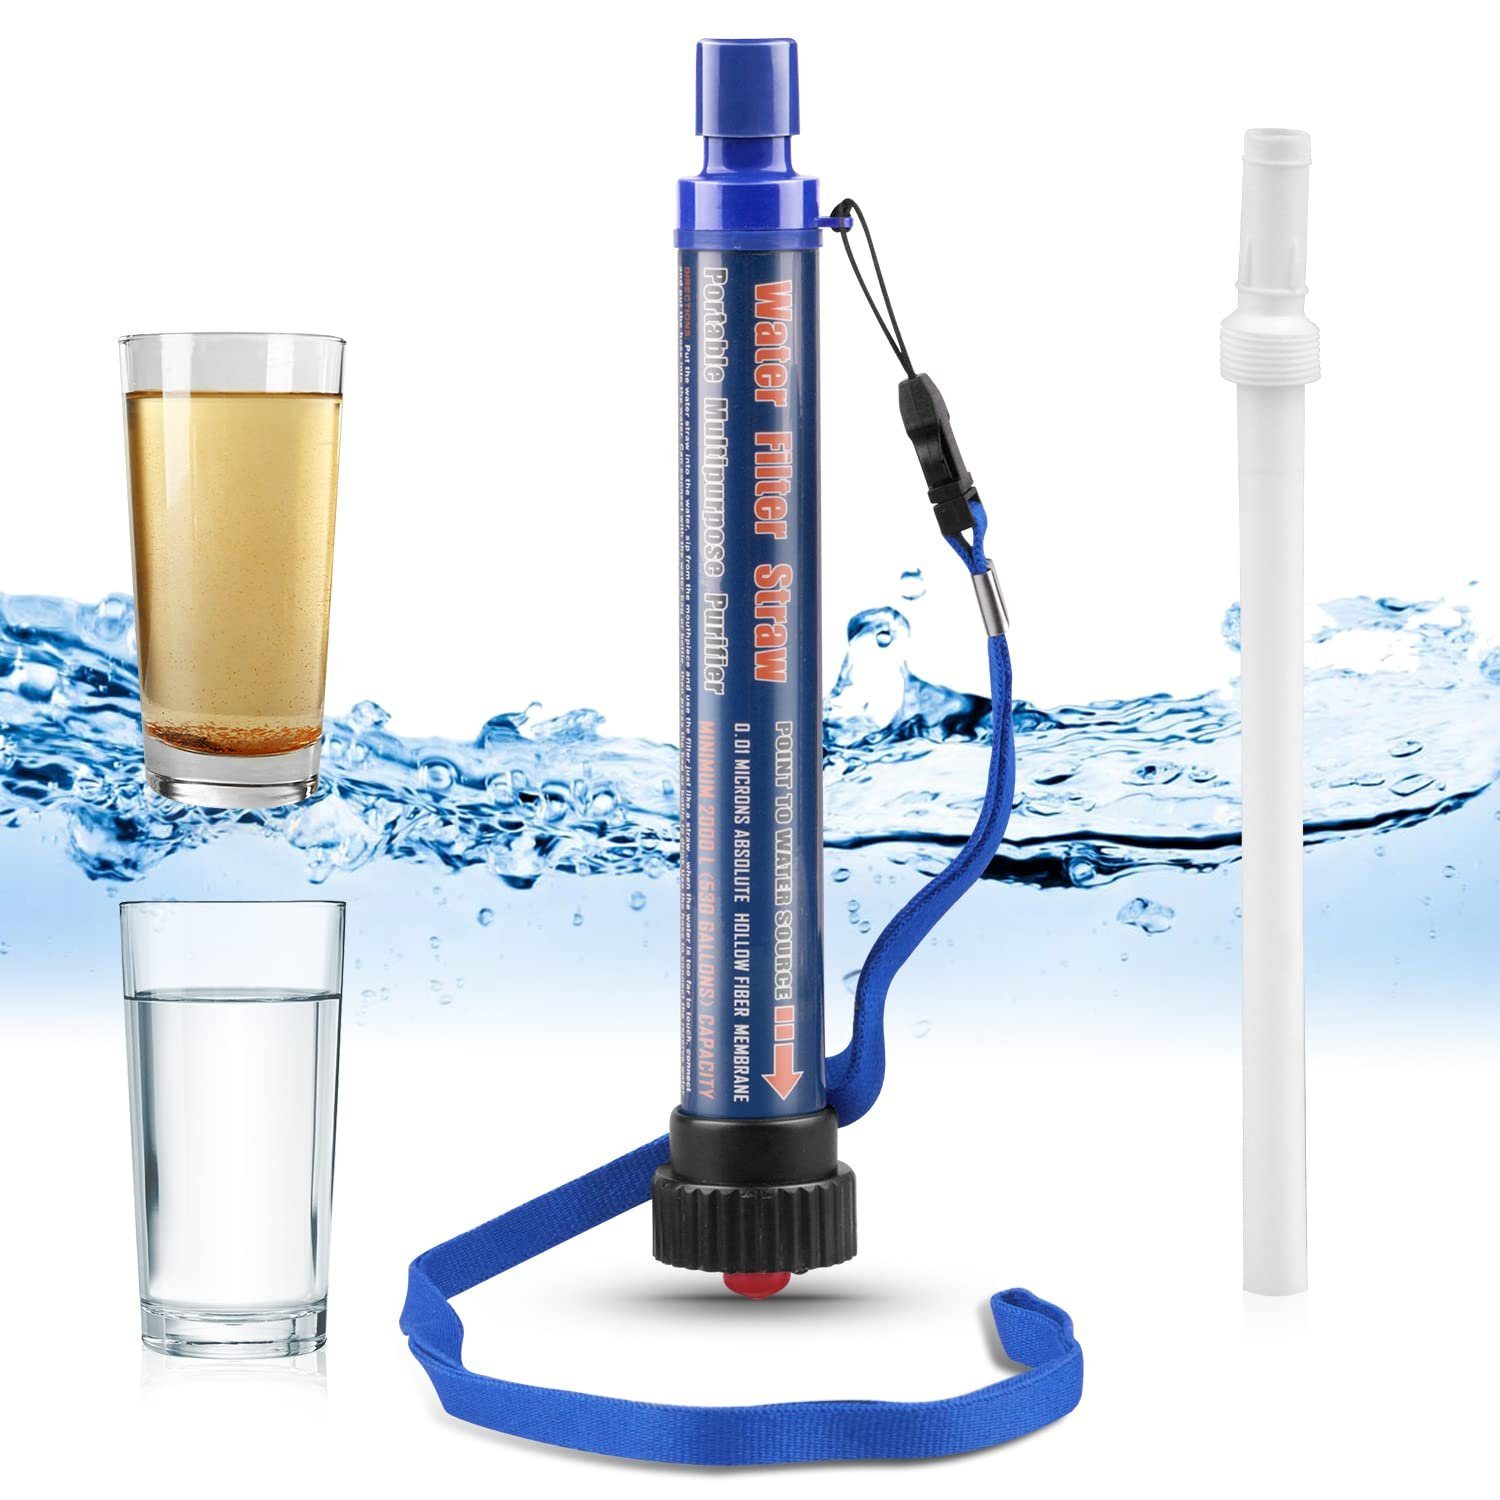 XDeer Wasserfilter Wasserfilter Outdoor,2000L Wasseraufbereiter,Survivalausrüstung, 99,99% aller Keime und Bakterien abtötet,geeignet für Camping Wandern Blau | Filter